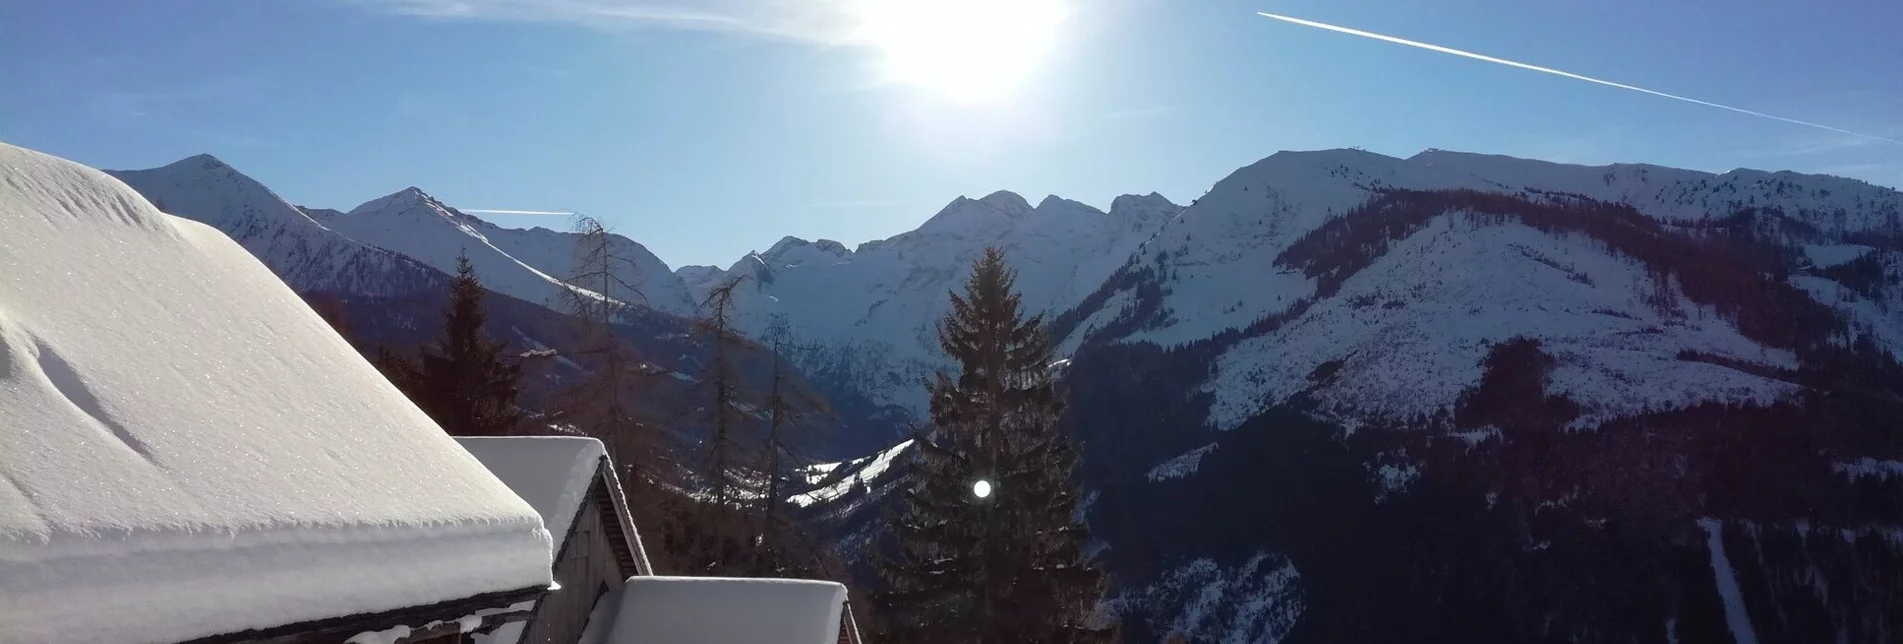 Schneeschuh Winter- und Schneeschuhwandern vom Michaelerberghaus zur Stiegleralm - Touren-Impression #1 | © Erlebnisregion Schladming-Dachstein